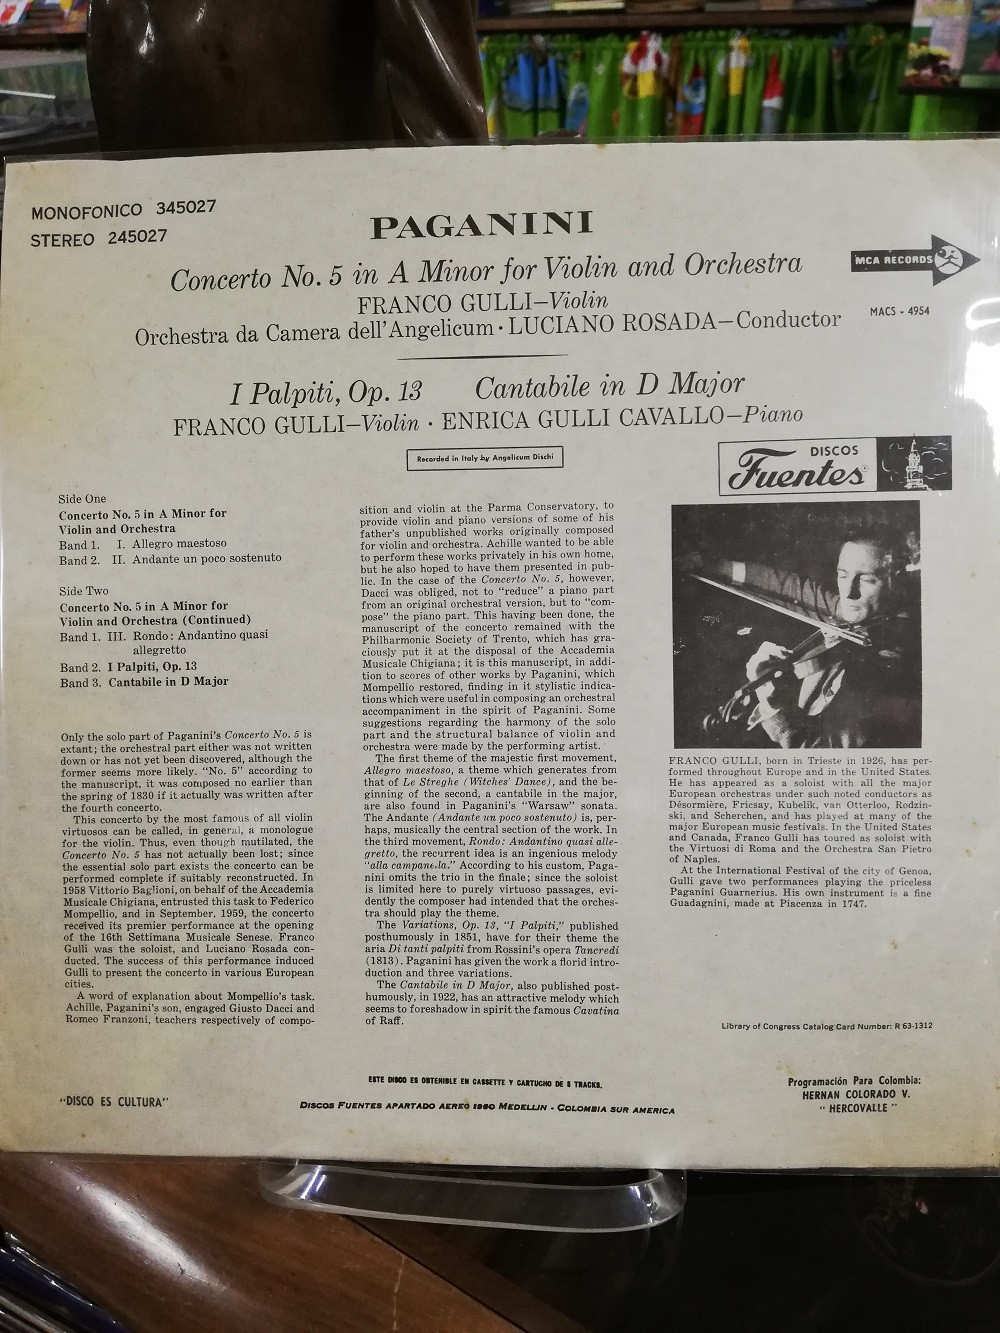 Imagen LP PAGANINI CONCERTO No. 5 - FRANCO GULLI, VIOLIN - LUCIANO ROSADA, CONDUCTOR 2